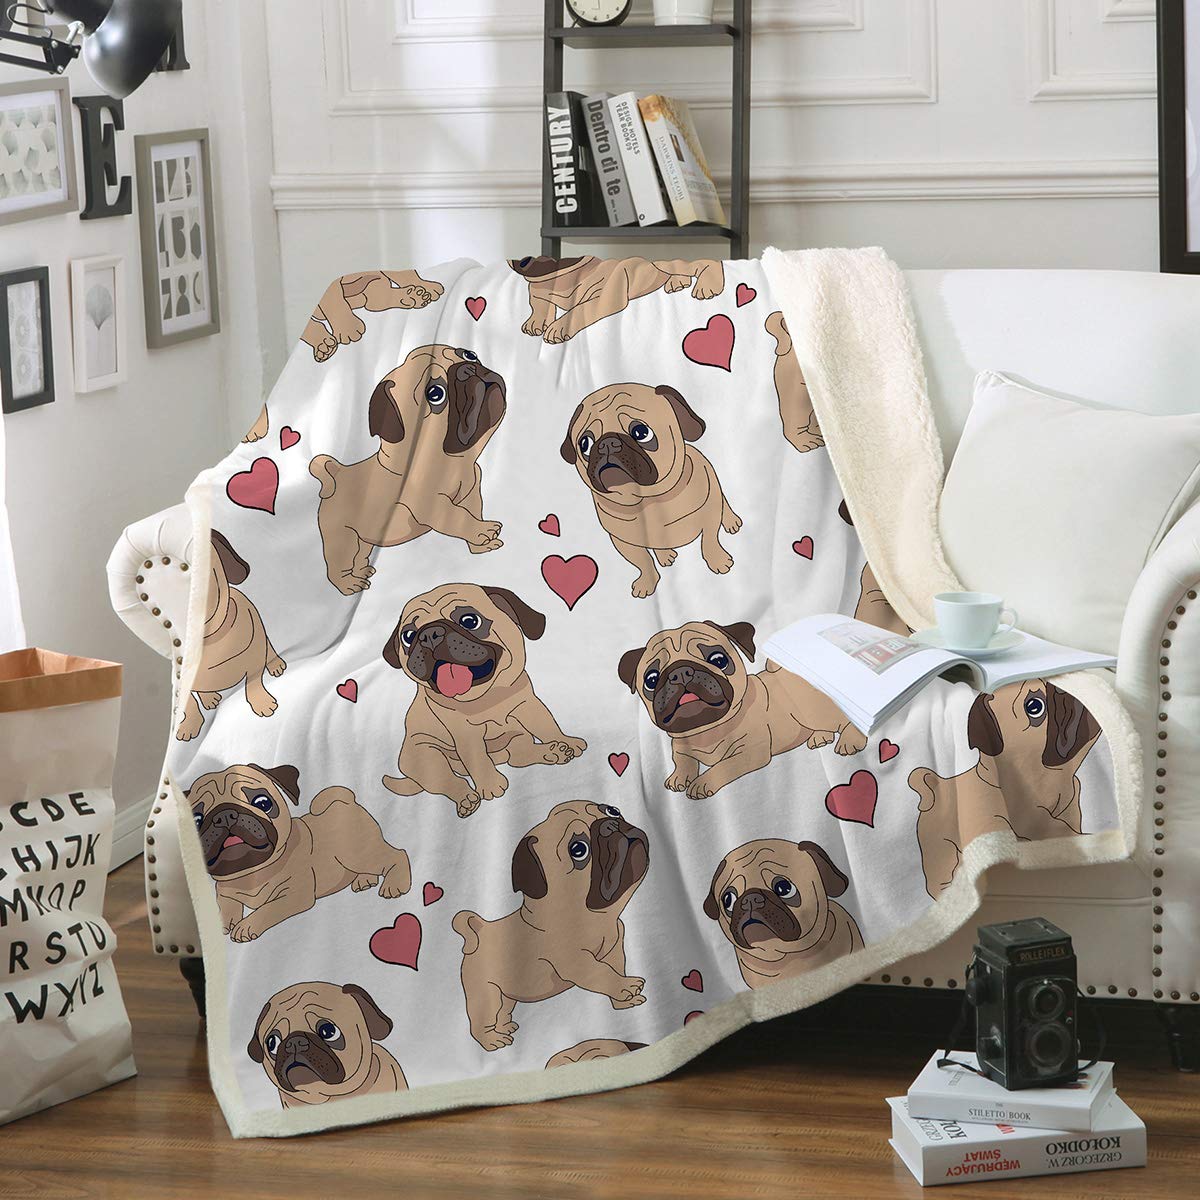 Sleepwish Pug Fleece Blanket Pet Blanket Dog Reversible Blanket